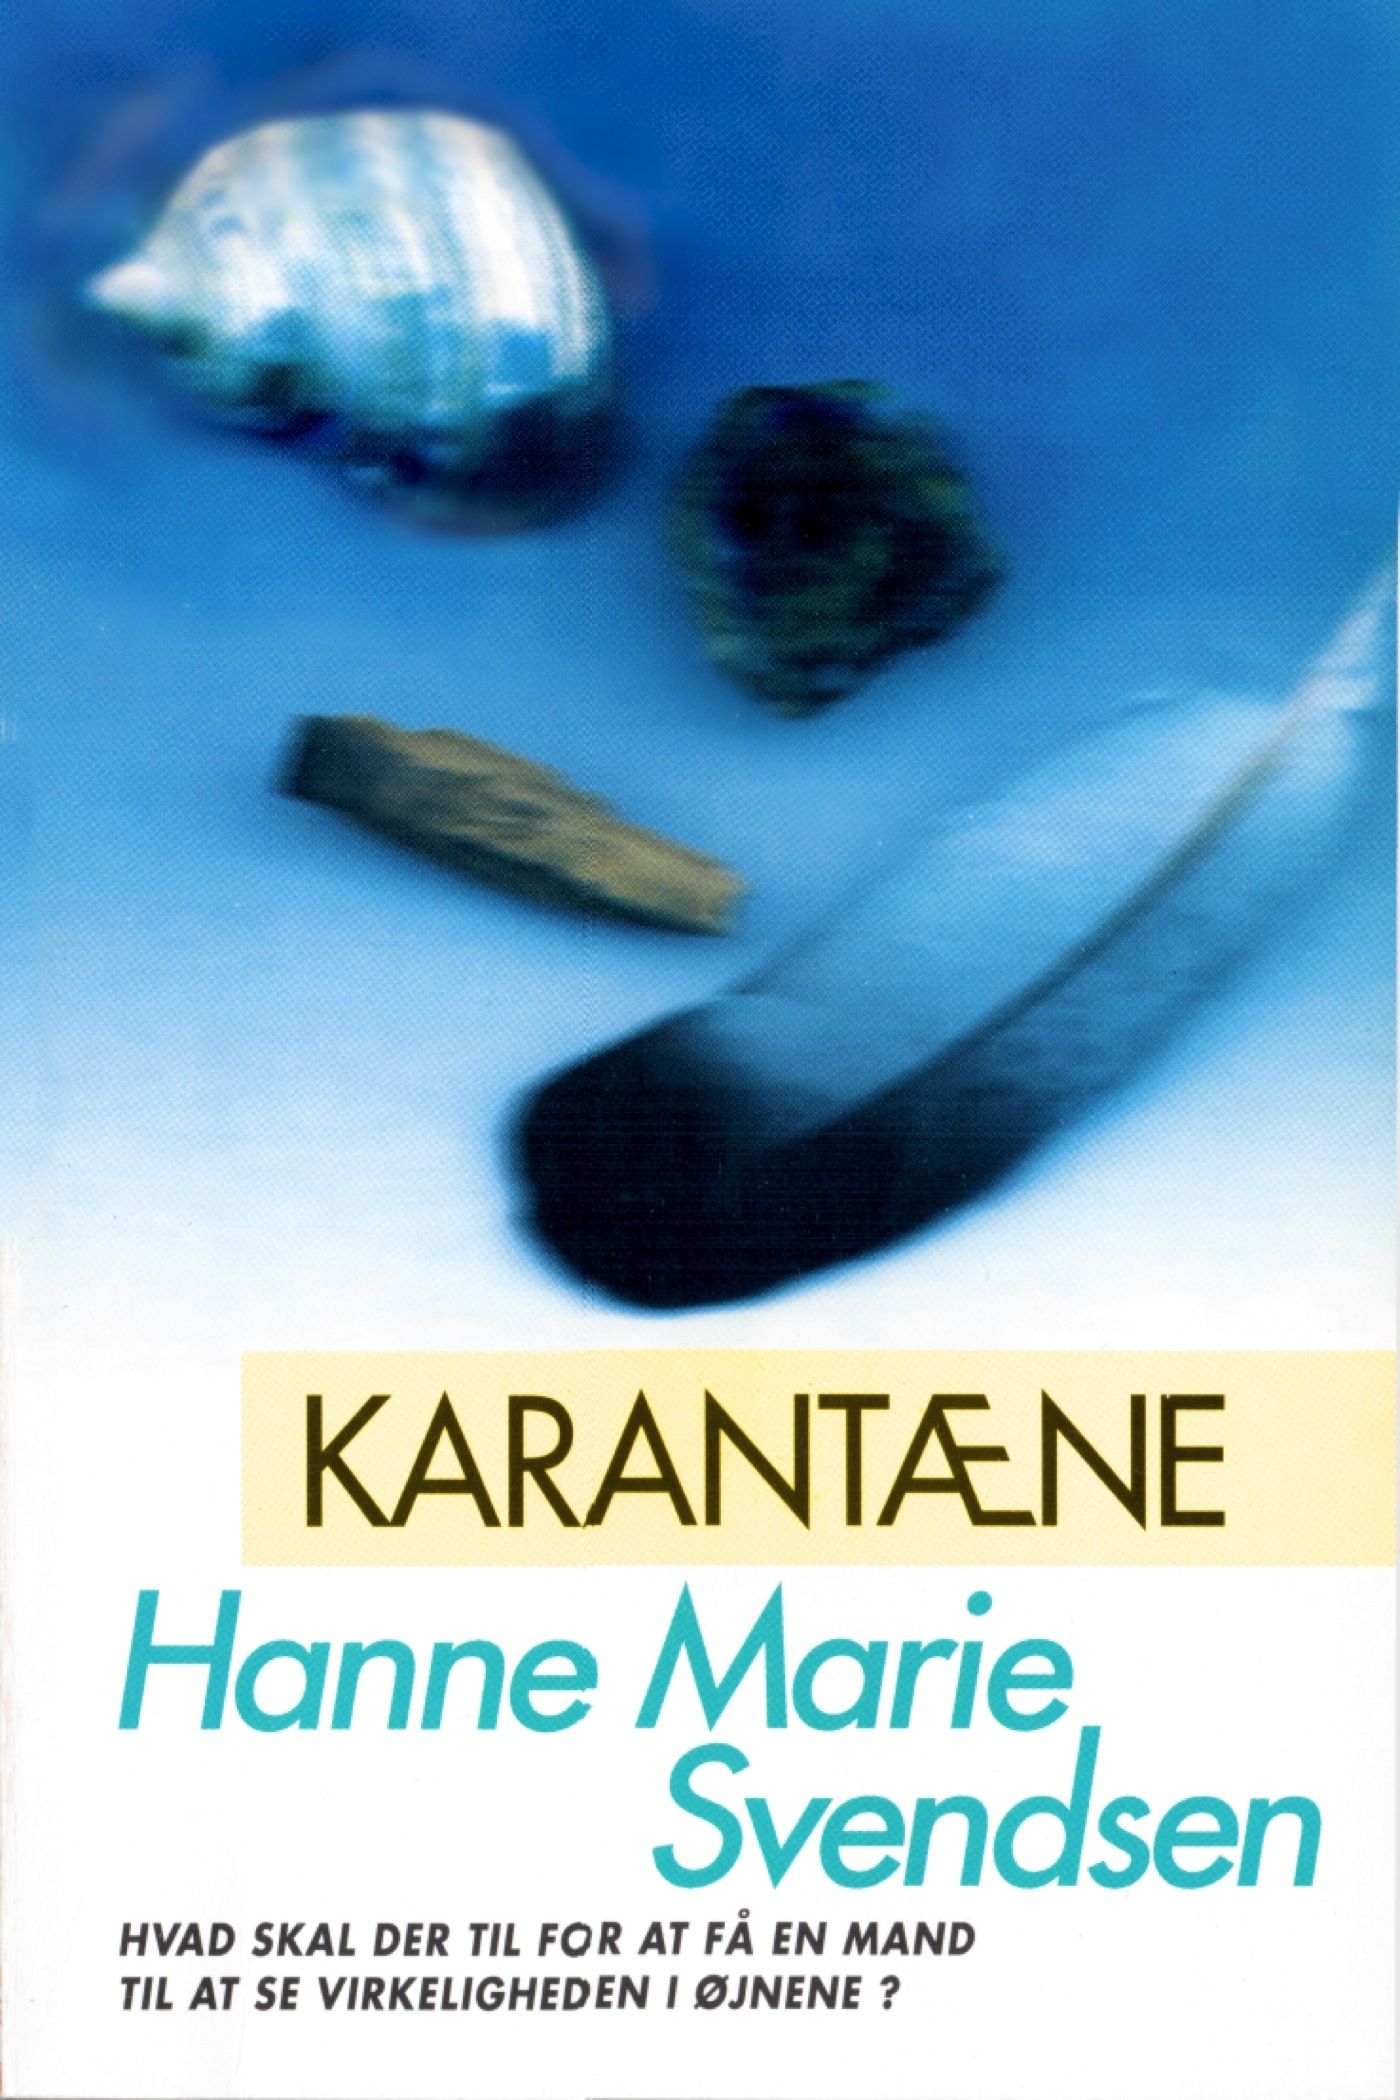 Karantæne, e-bog af Hanne Marie Svendsen